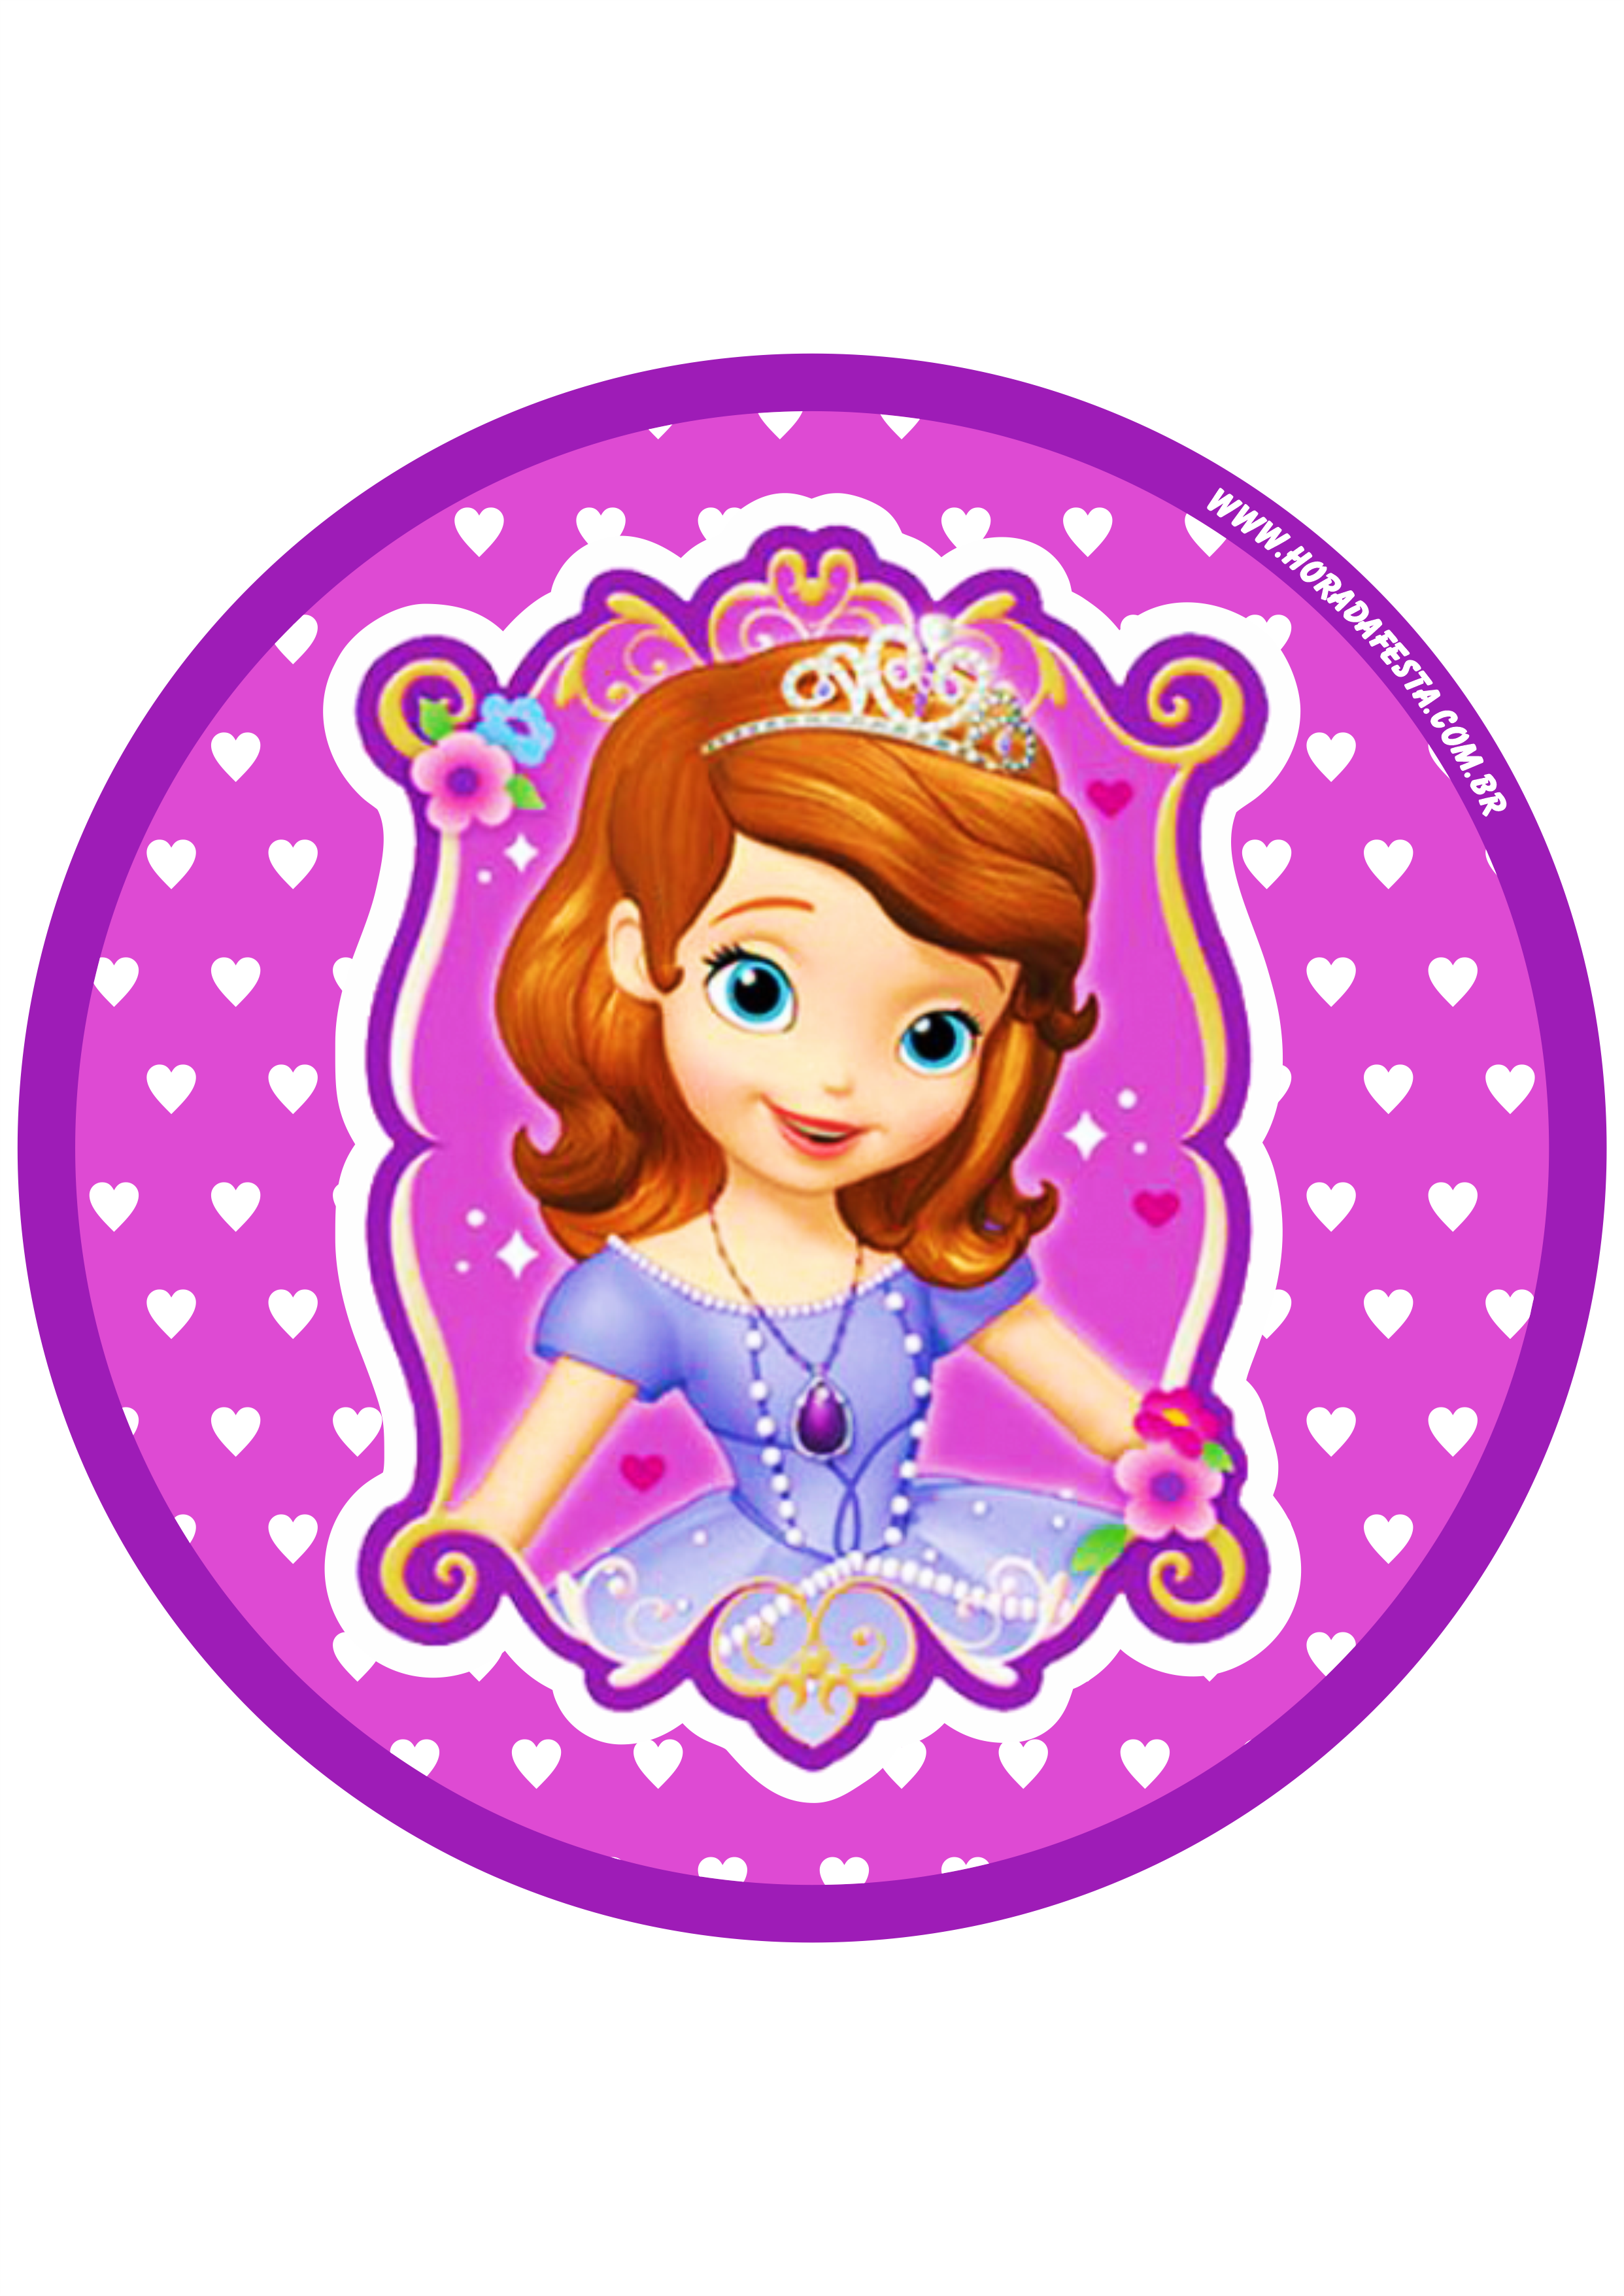 Princesa Sofia adesivo redondo tag sticker painel festa de aniversário infantil menina png